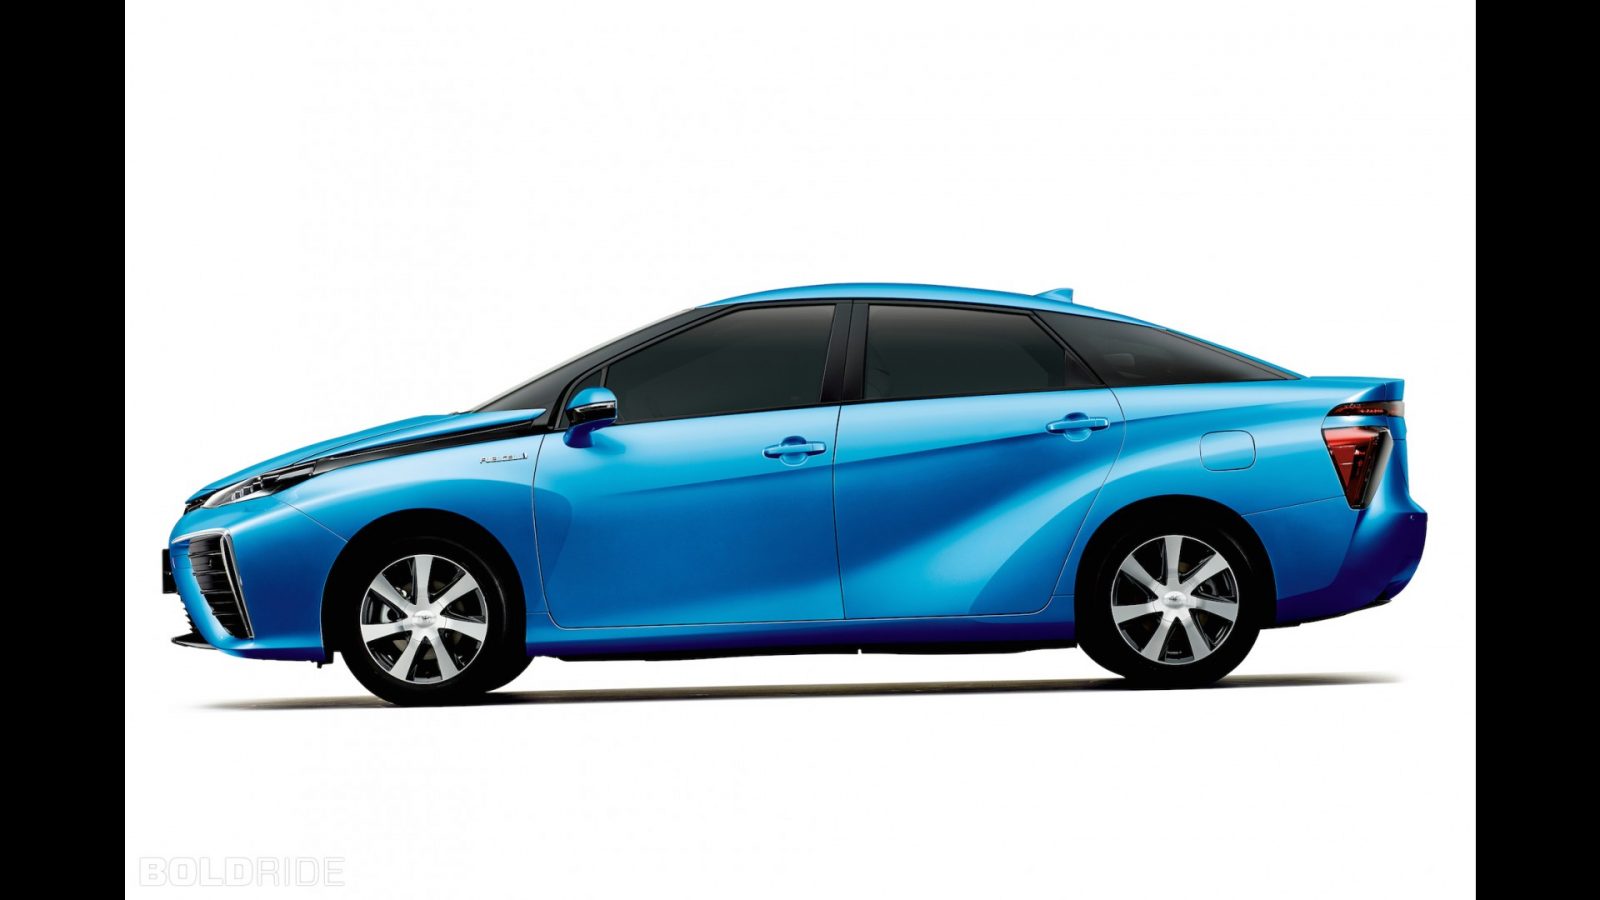 2 décembre 2002 – Toyota présente son premier véhicule à pile à combustible